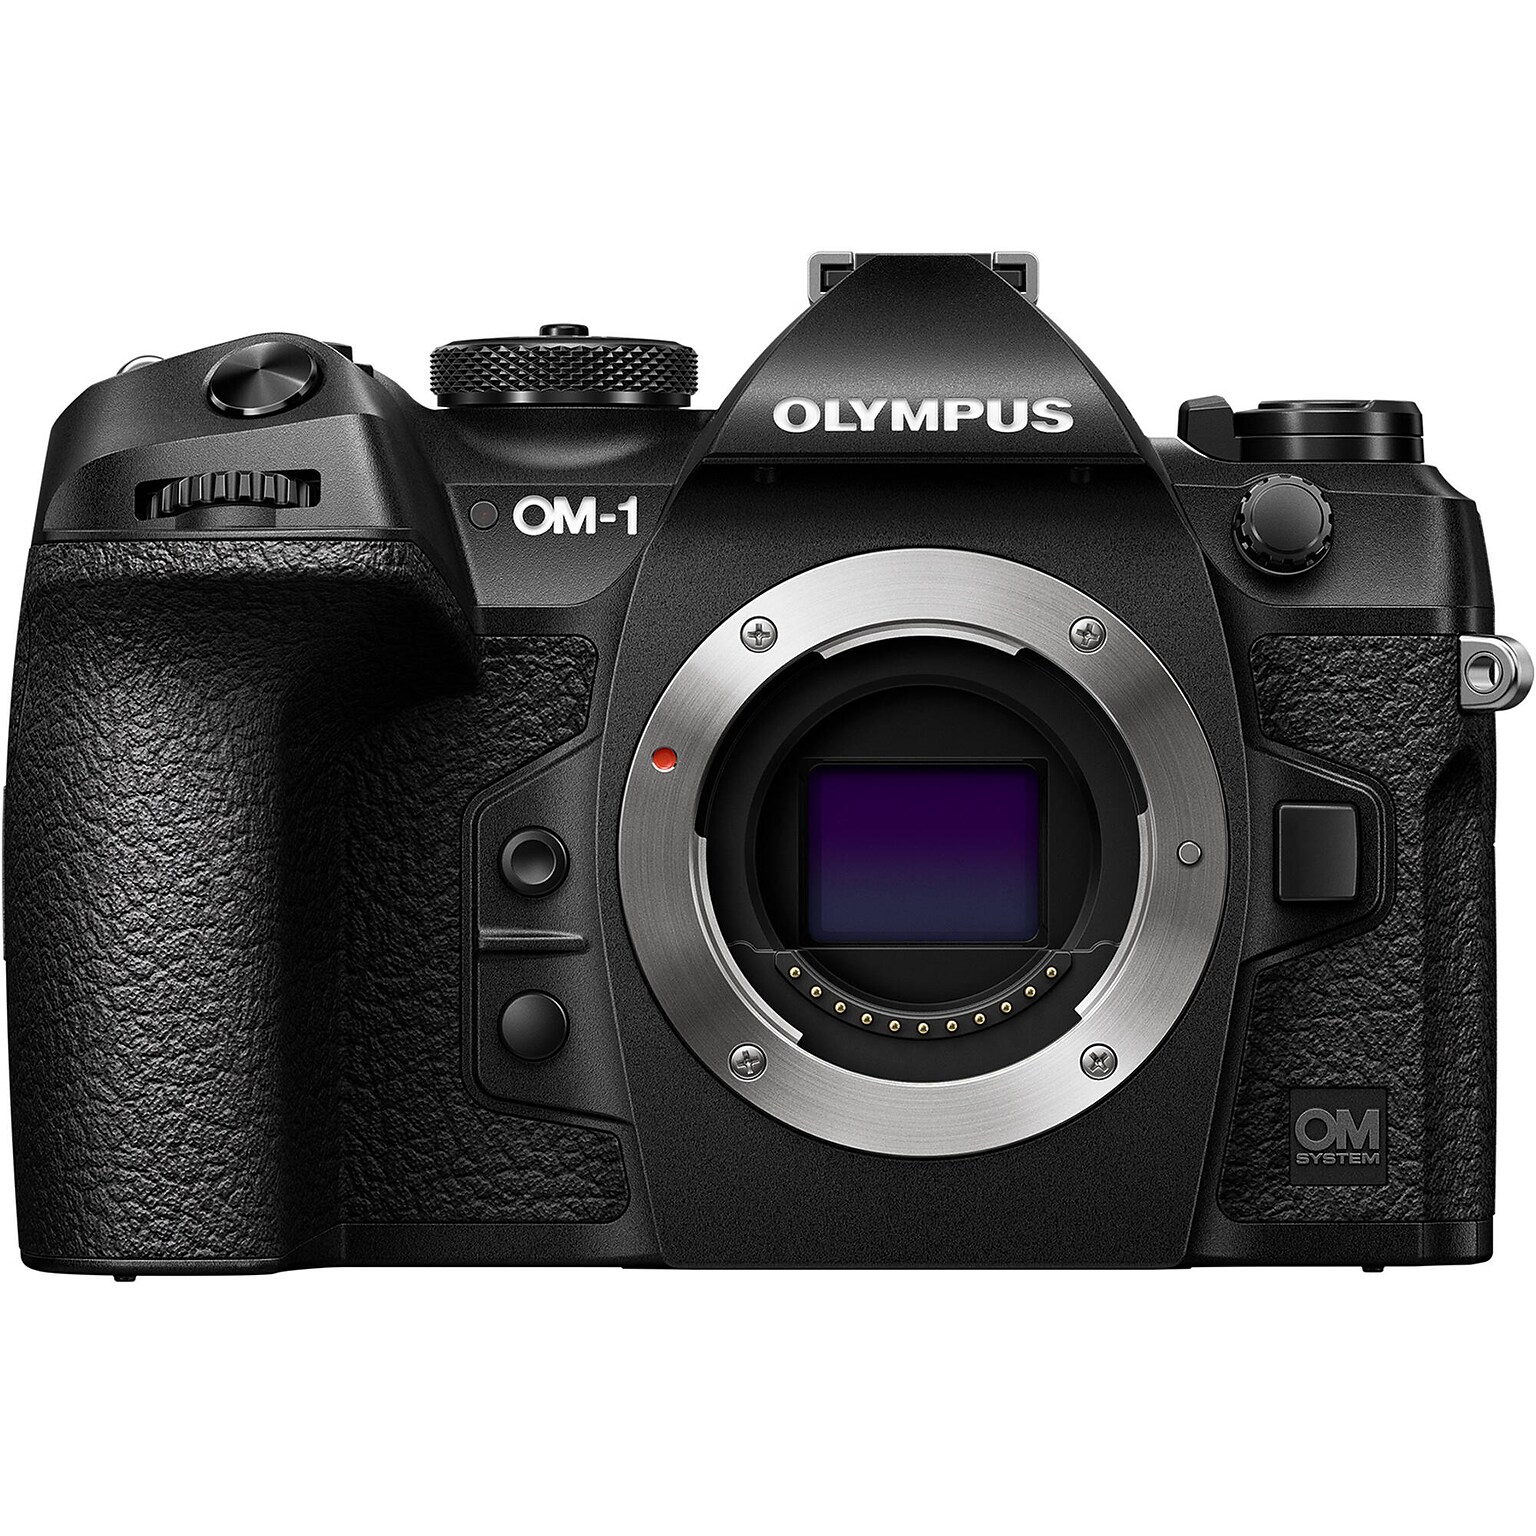 Olympus OM SYSTEM OM-1 20.4 Megapixel Mirrorless Camera Body Only, Black (V210010BU000)